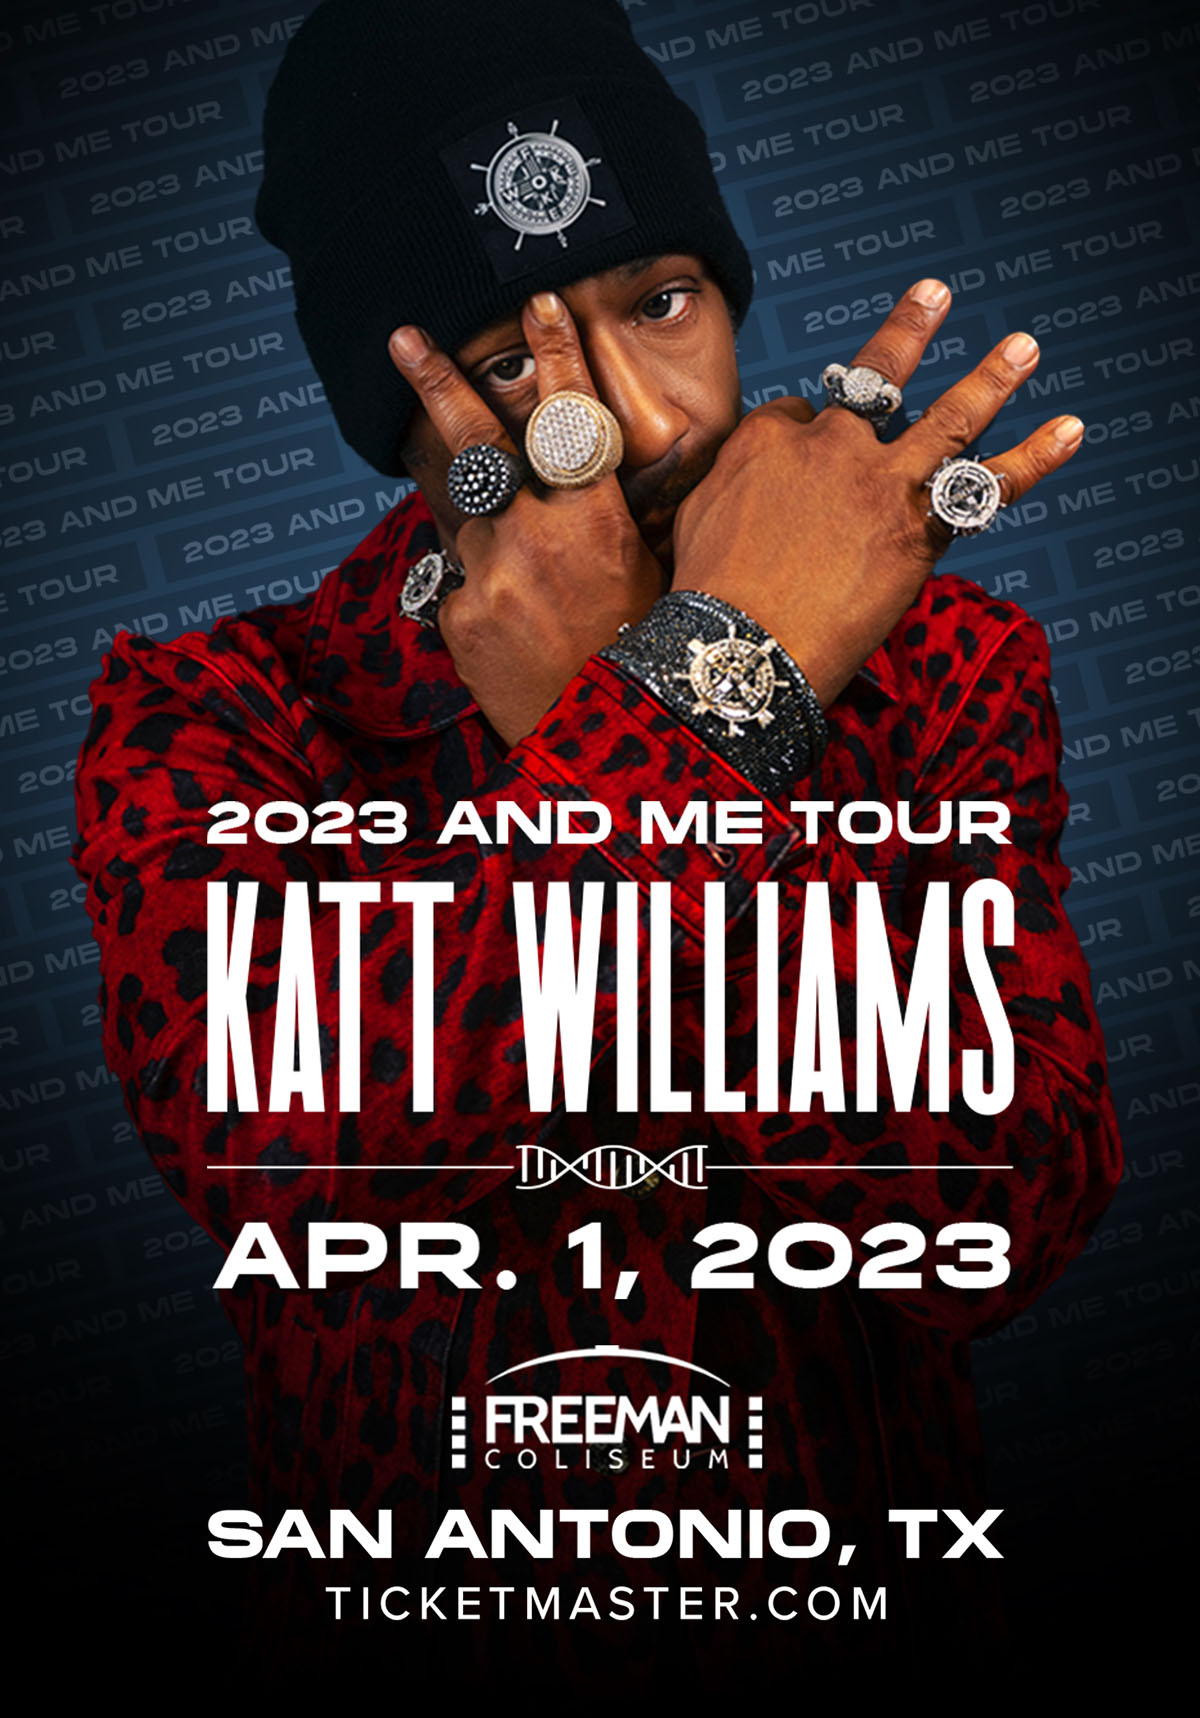 katt williams tour 2023 chicago